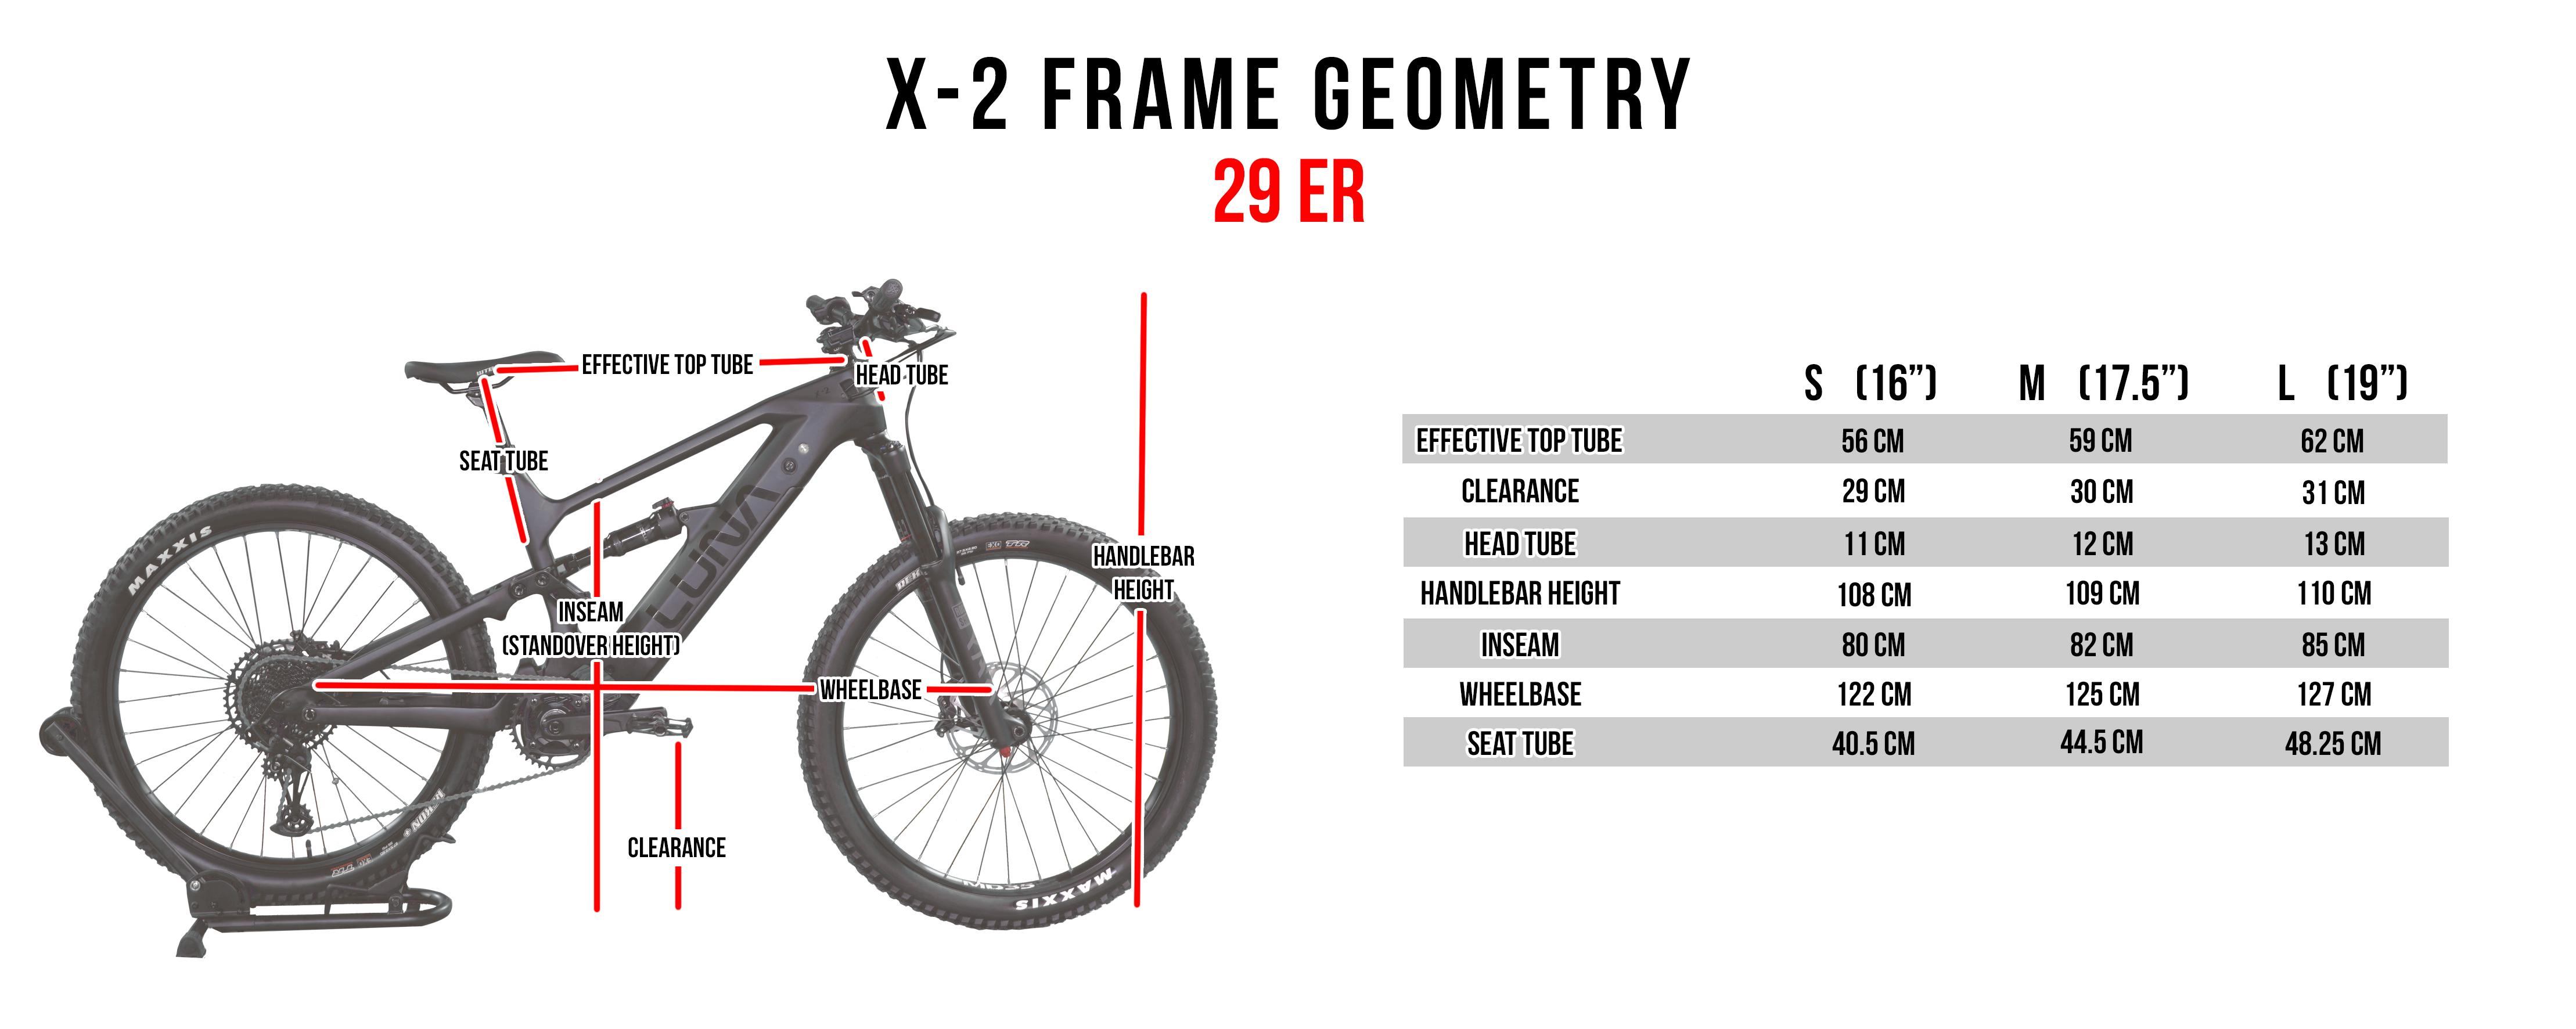 X2 29er Frame Geometry